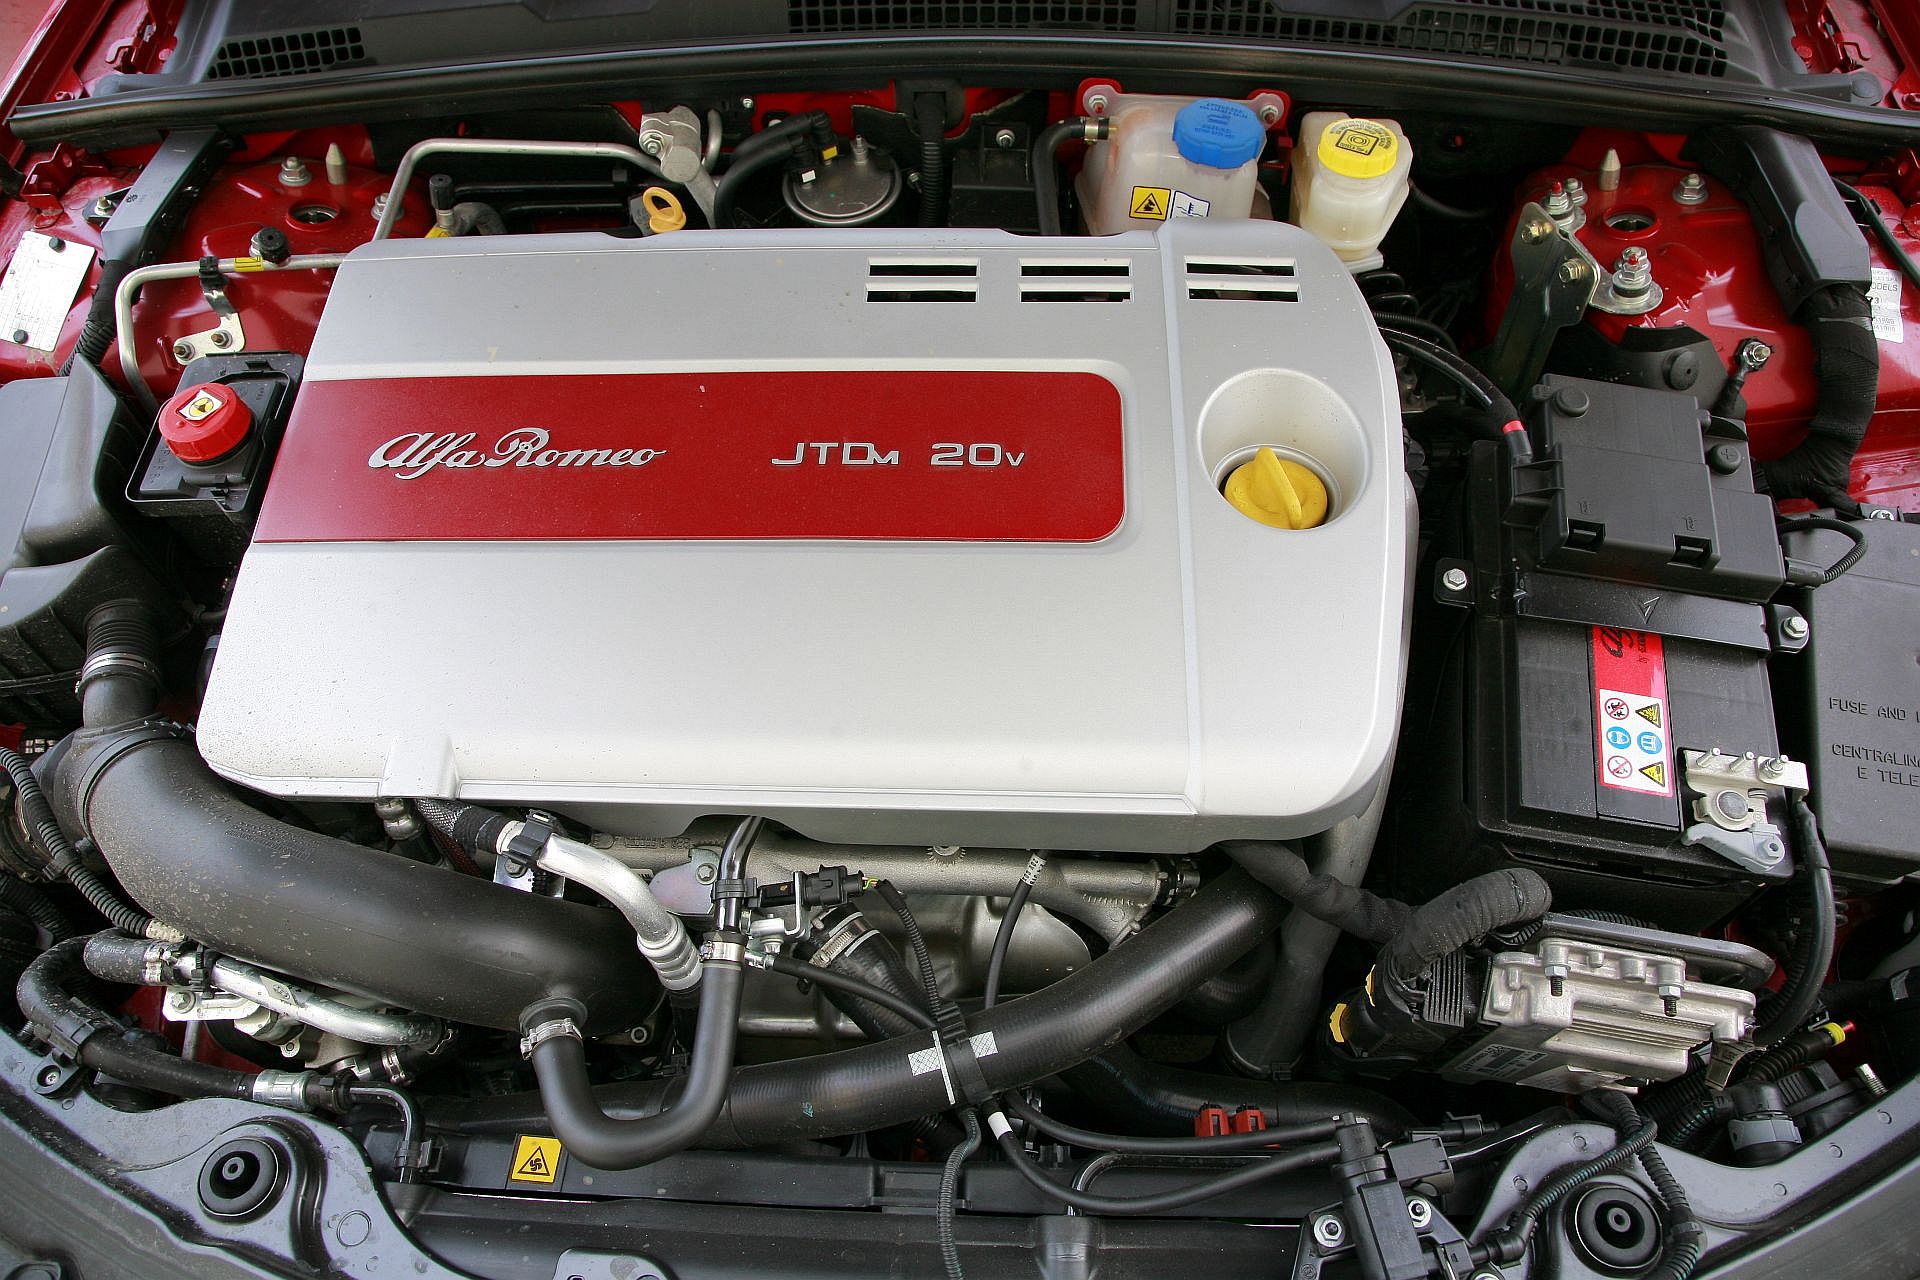 Używana Alfa Romeo 159 (2005-2011) - który silnik wybrać?